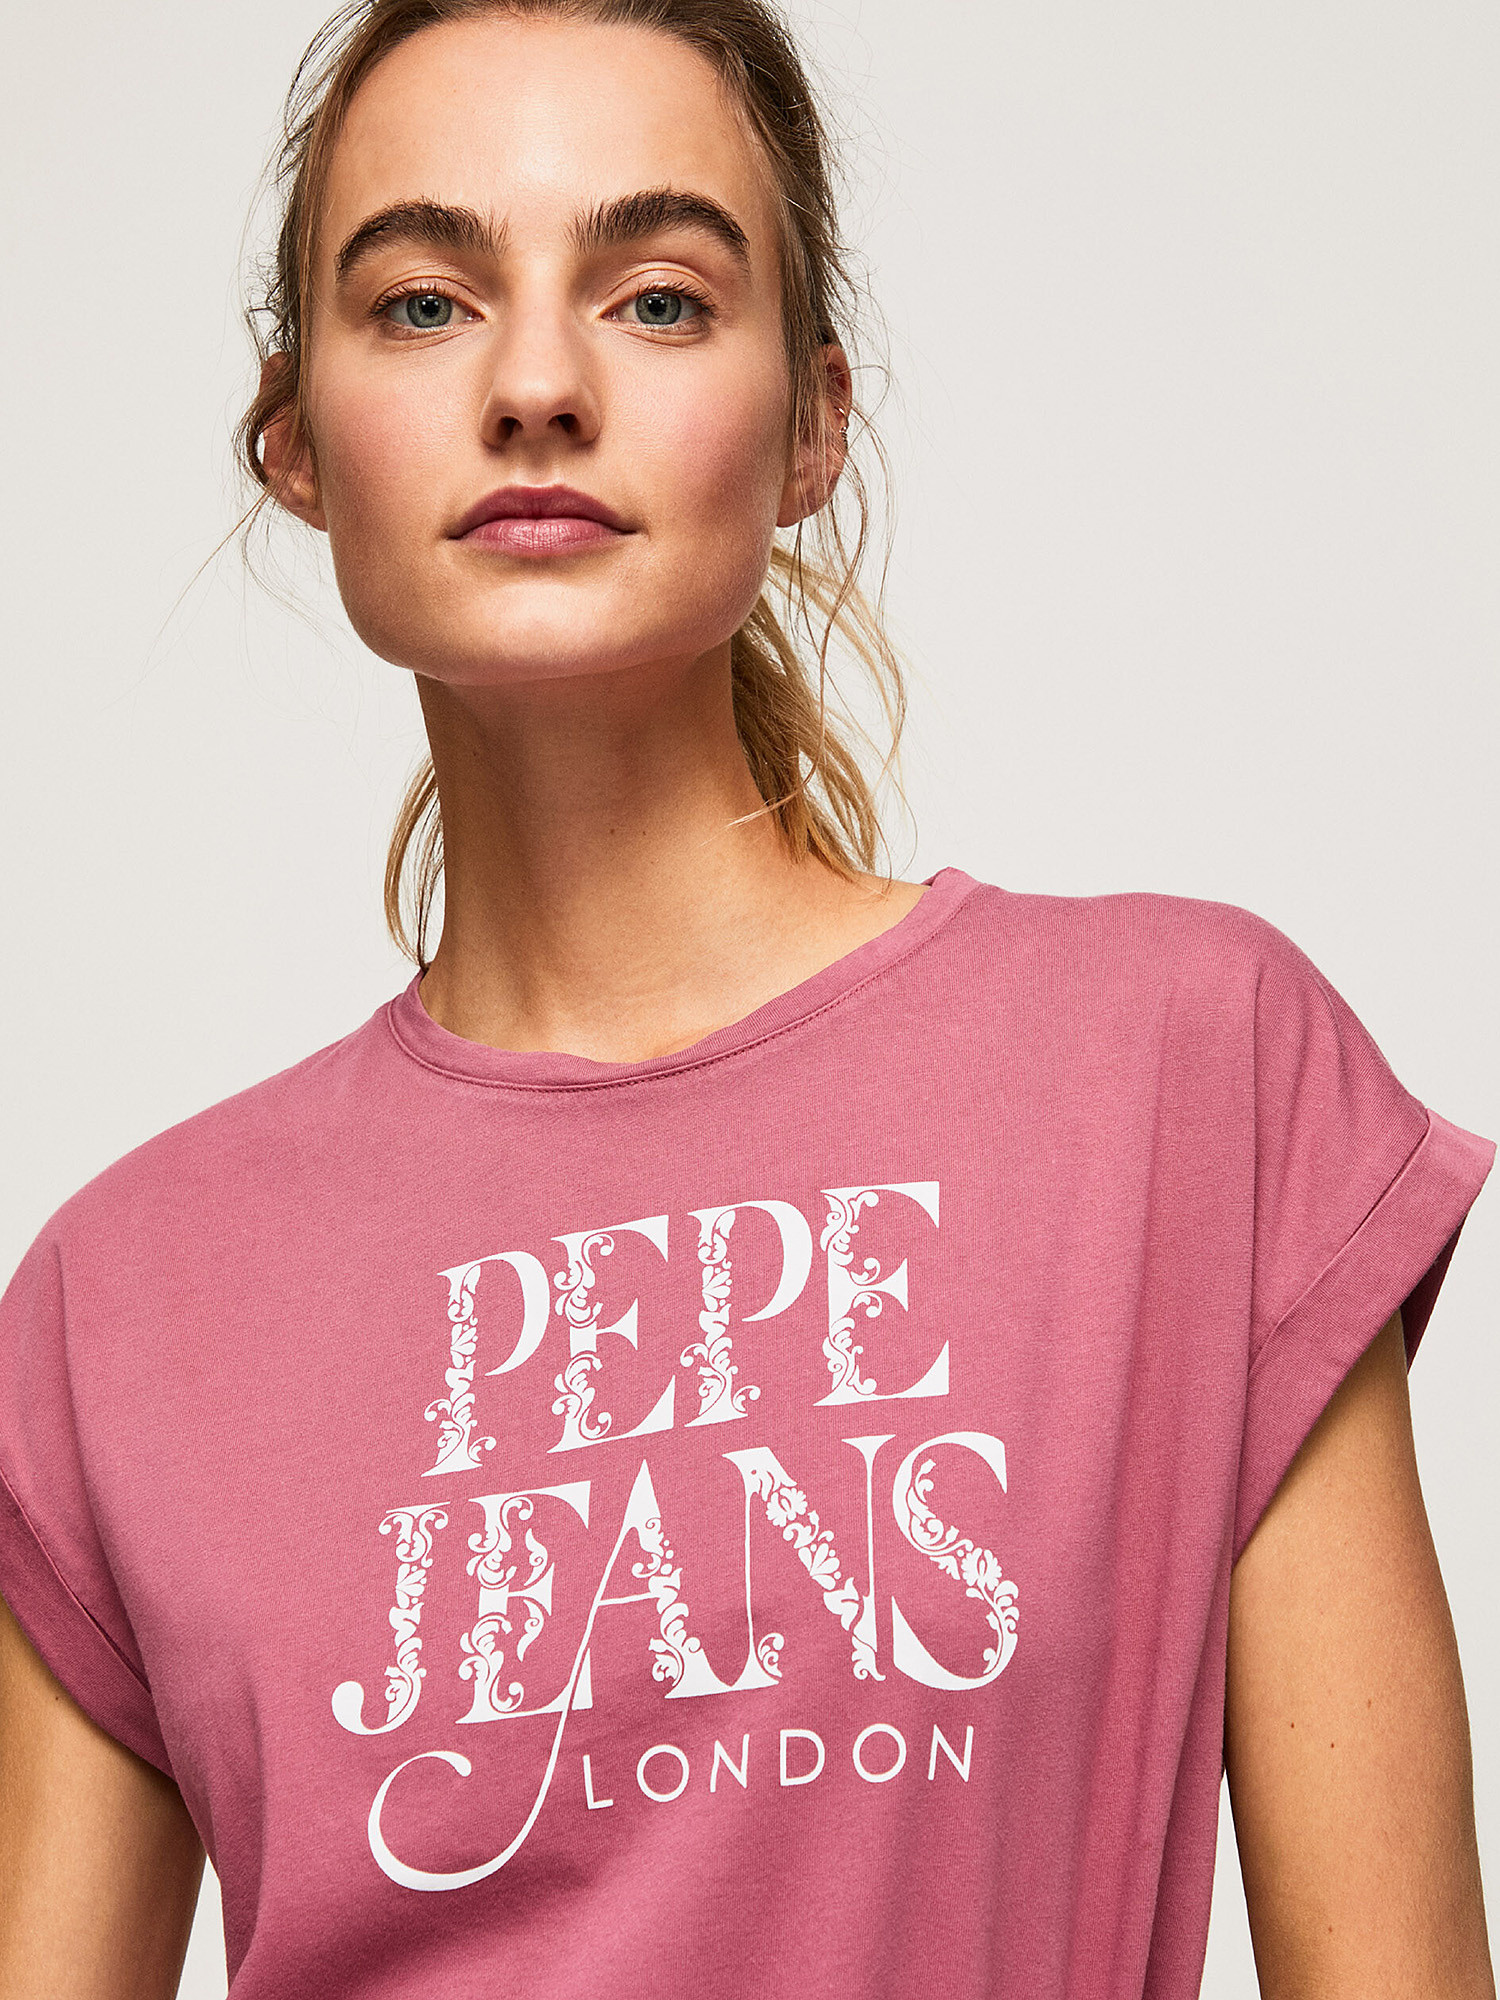 Pepe Jeans - Cotton logo T-shirt, Dark Pink, large image number 5